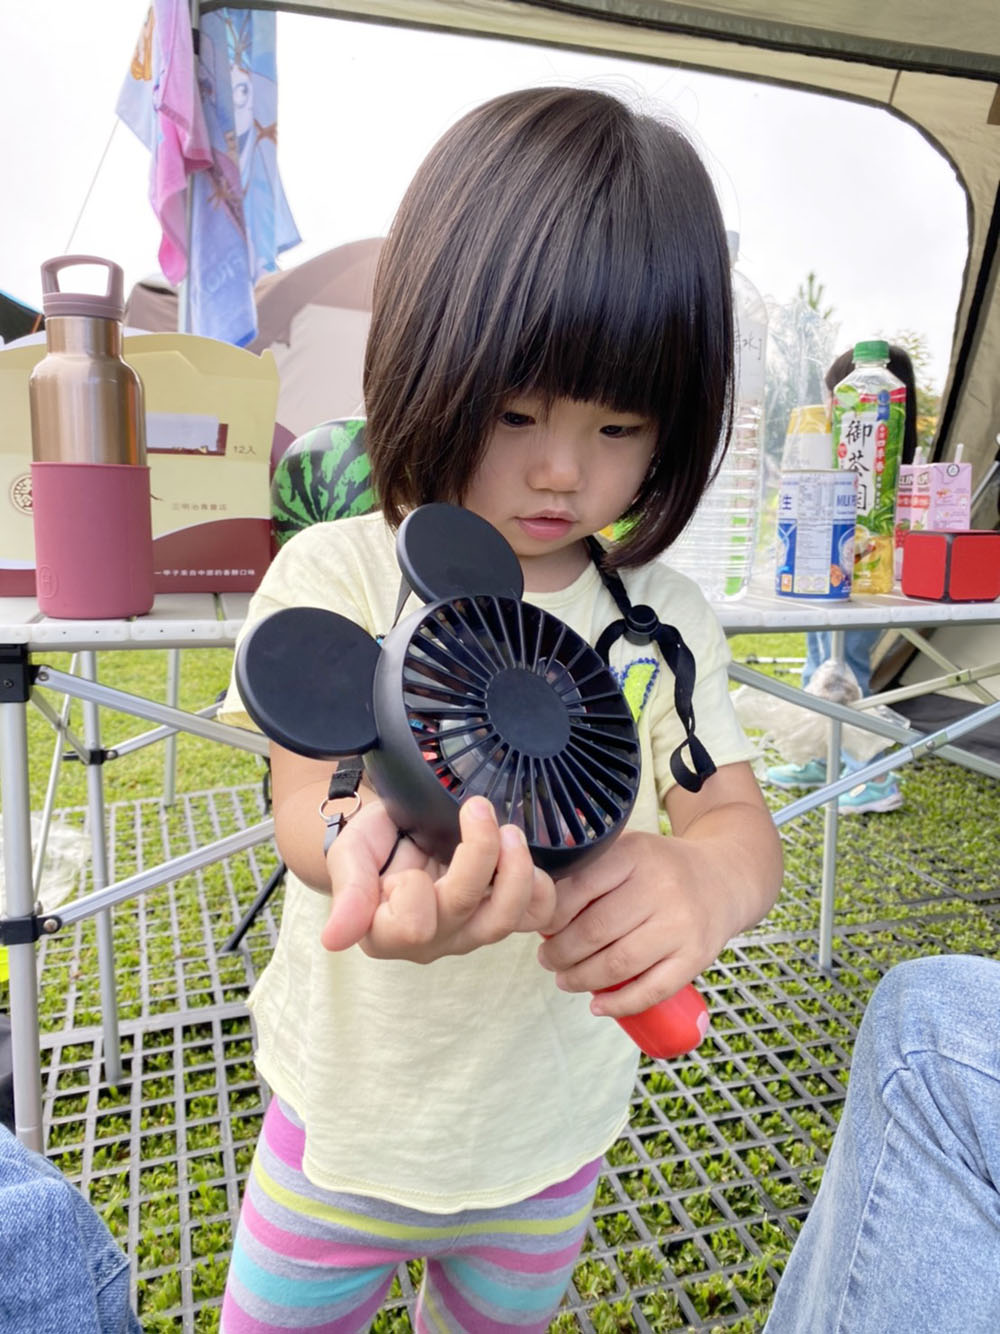 [啾團] 日本DOSHISHA米奇3WAY手持電扇可掛著/拿著/放著!到哪都能用的超可愛手持大風力風扇!